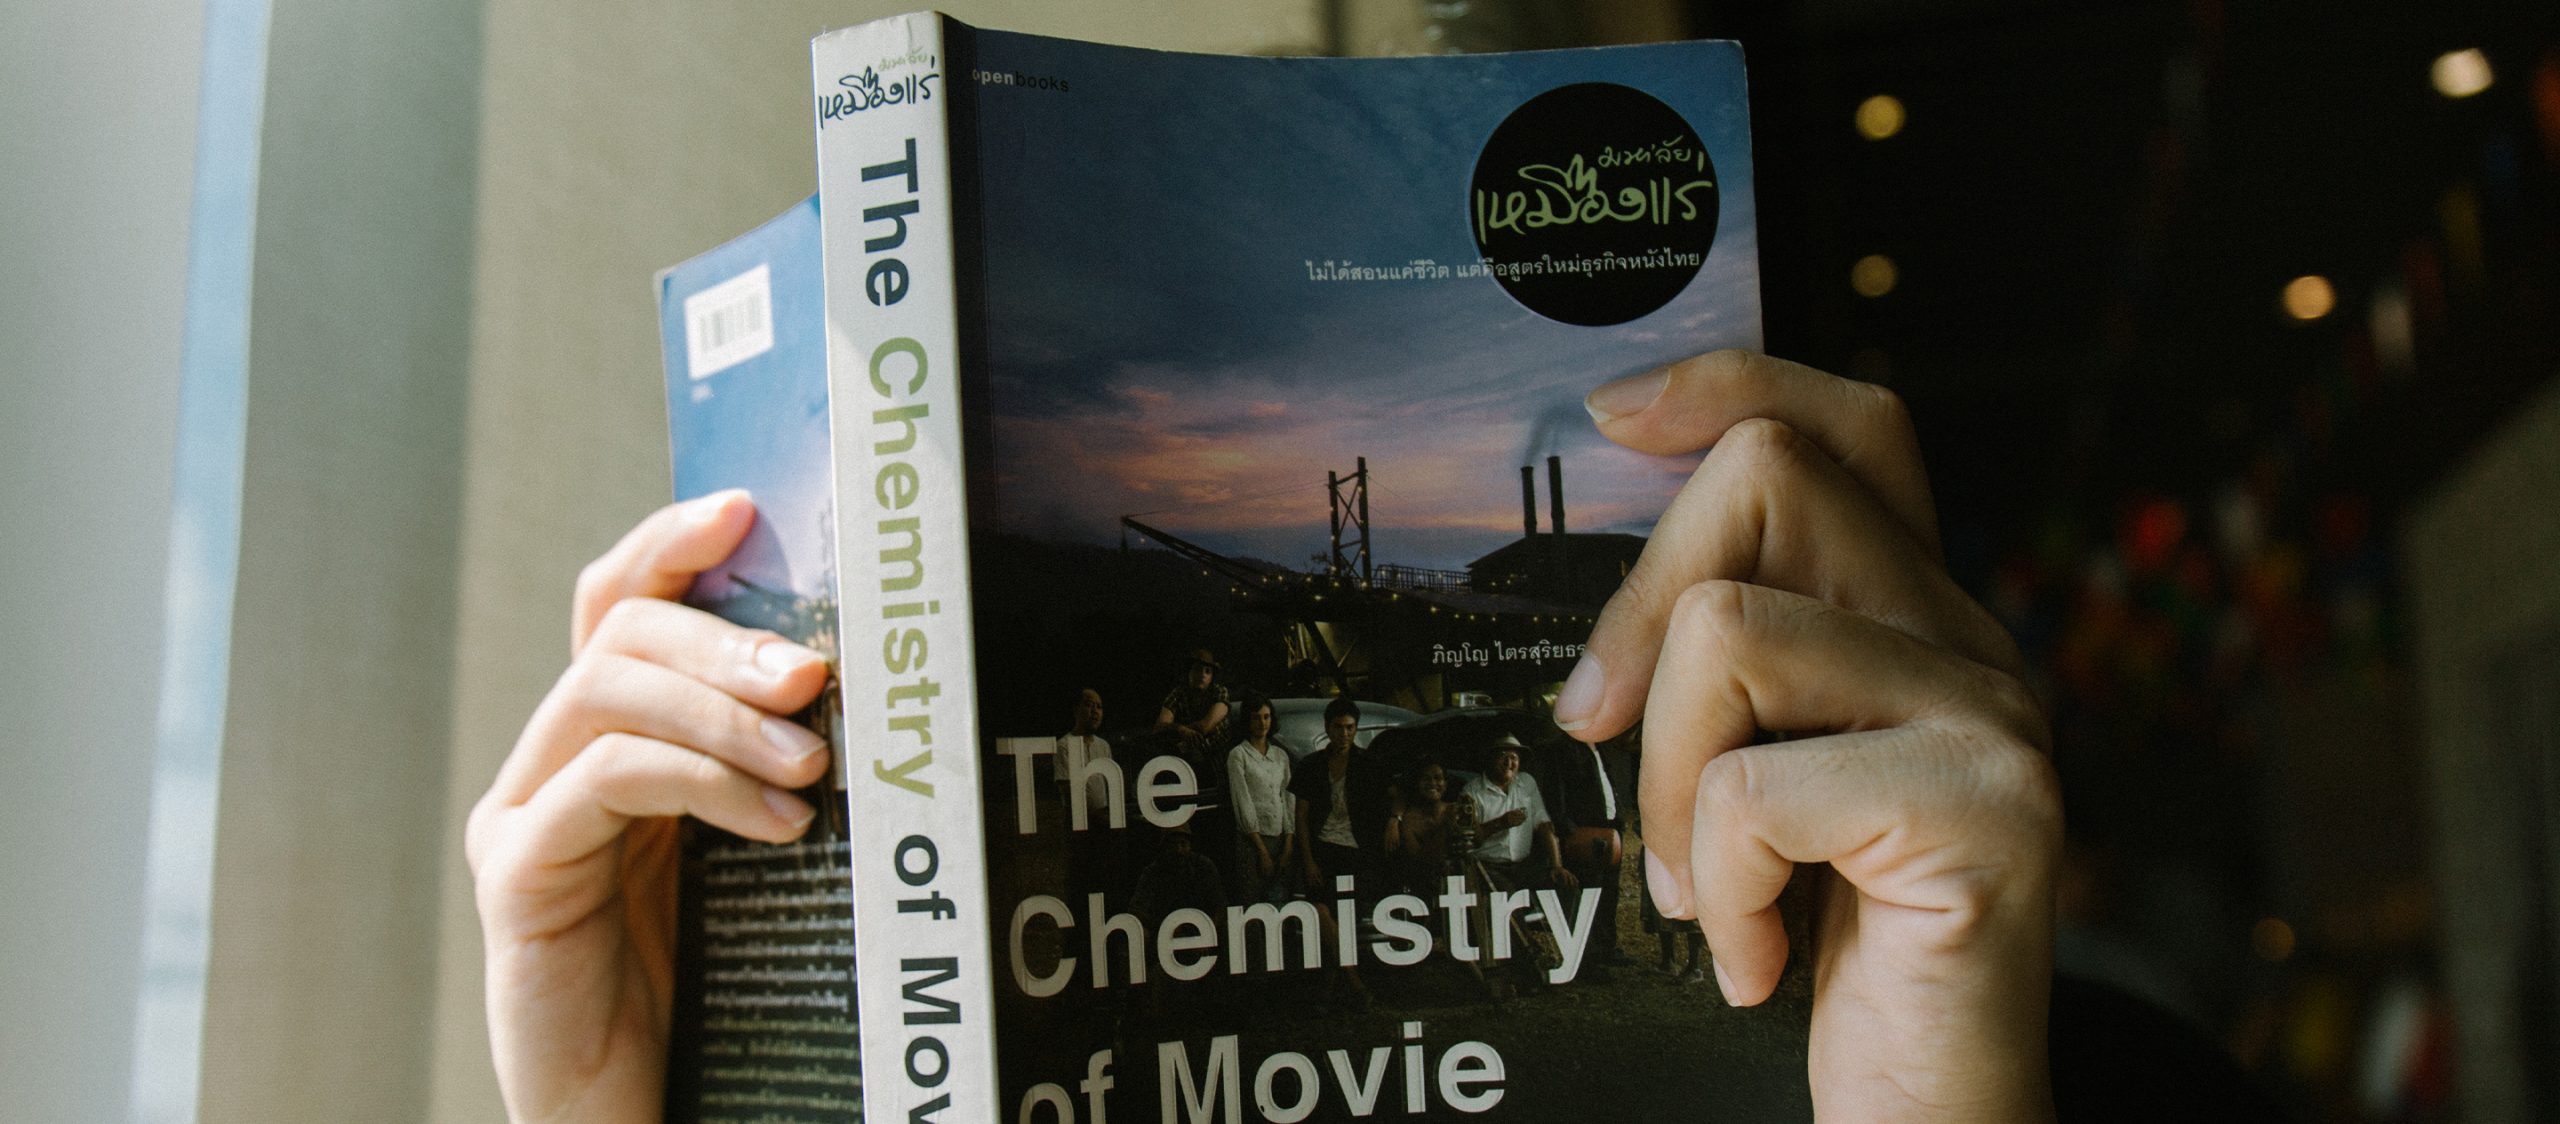 “การทำหนังต้องอาศัยเคมี” The Chemistry of Movie หนังสือที่ทำให้นวพลเข้าใจการทำหนัง